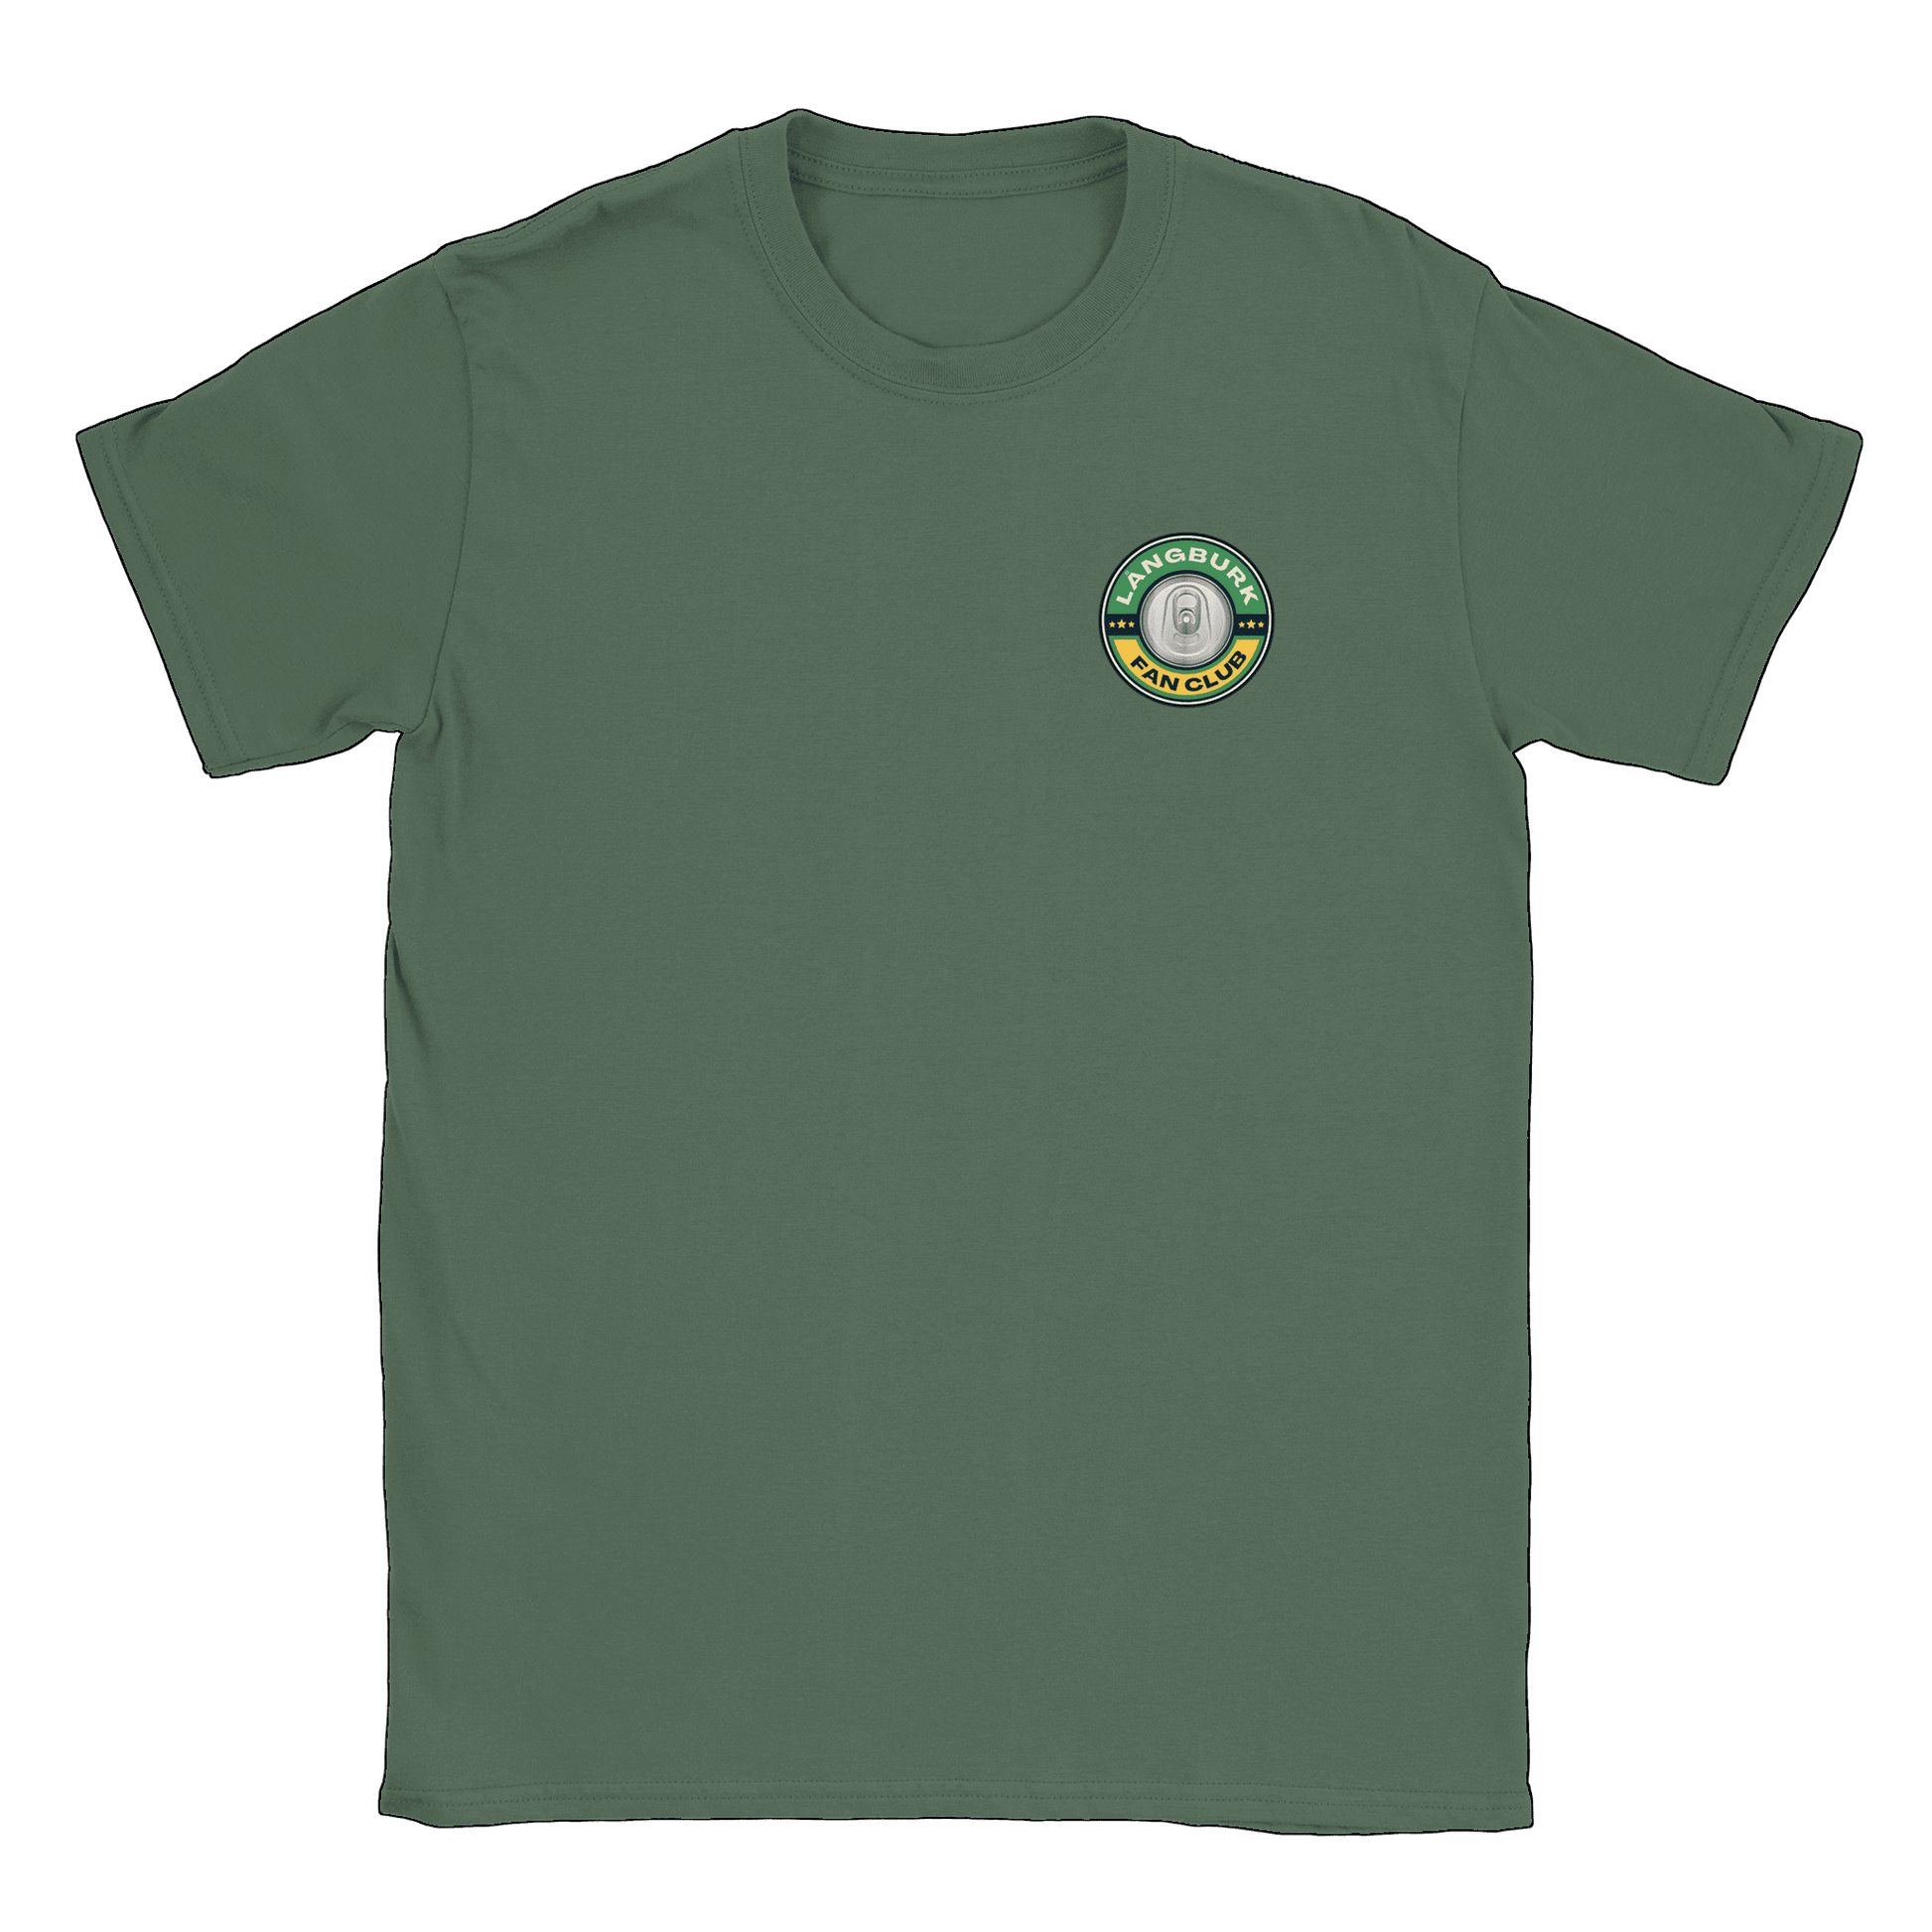 Långburk Fan Club liten - T-shirt Military Green